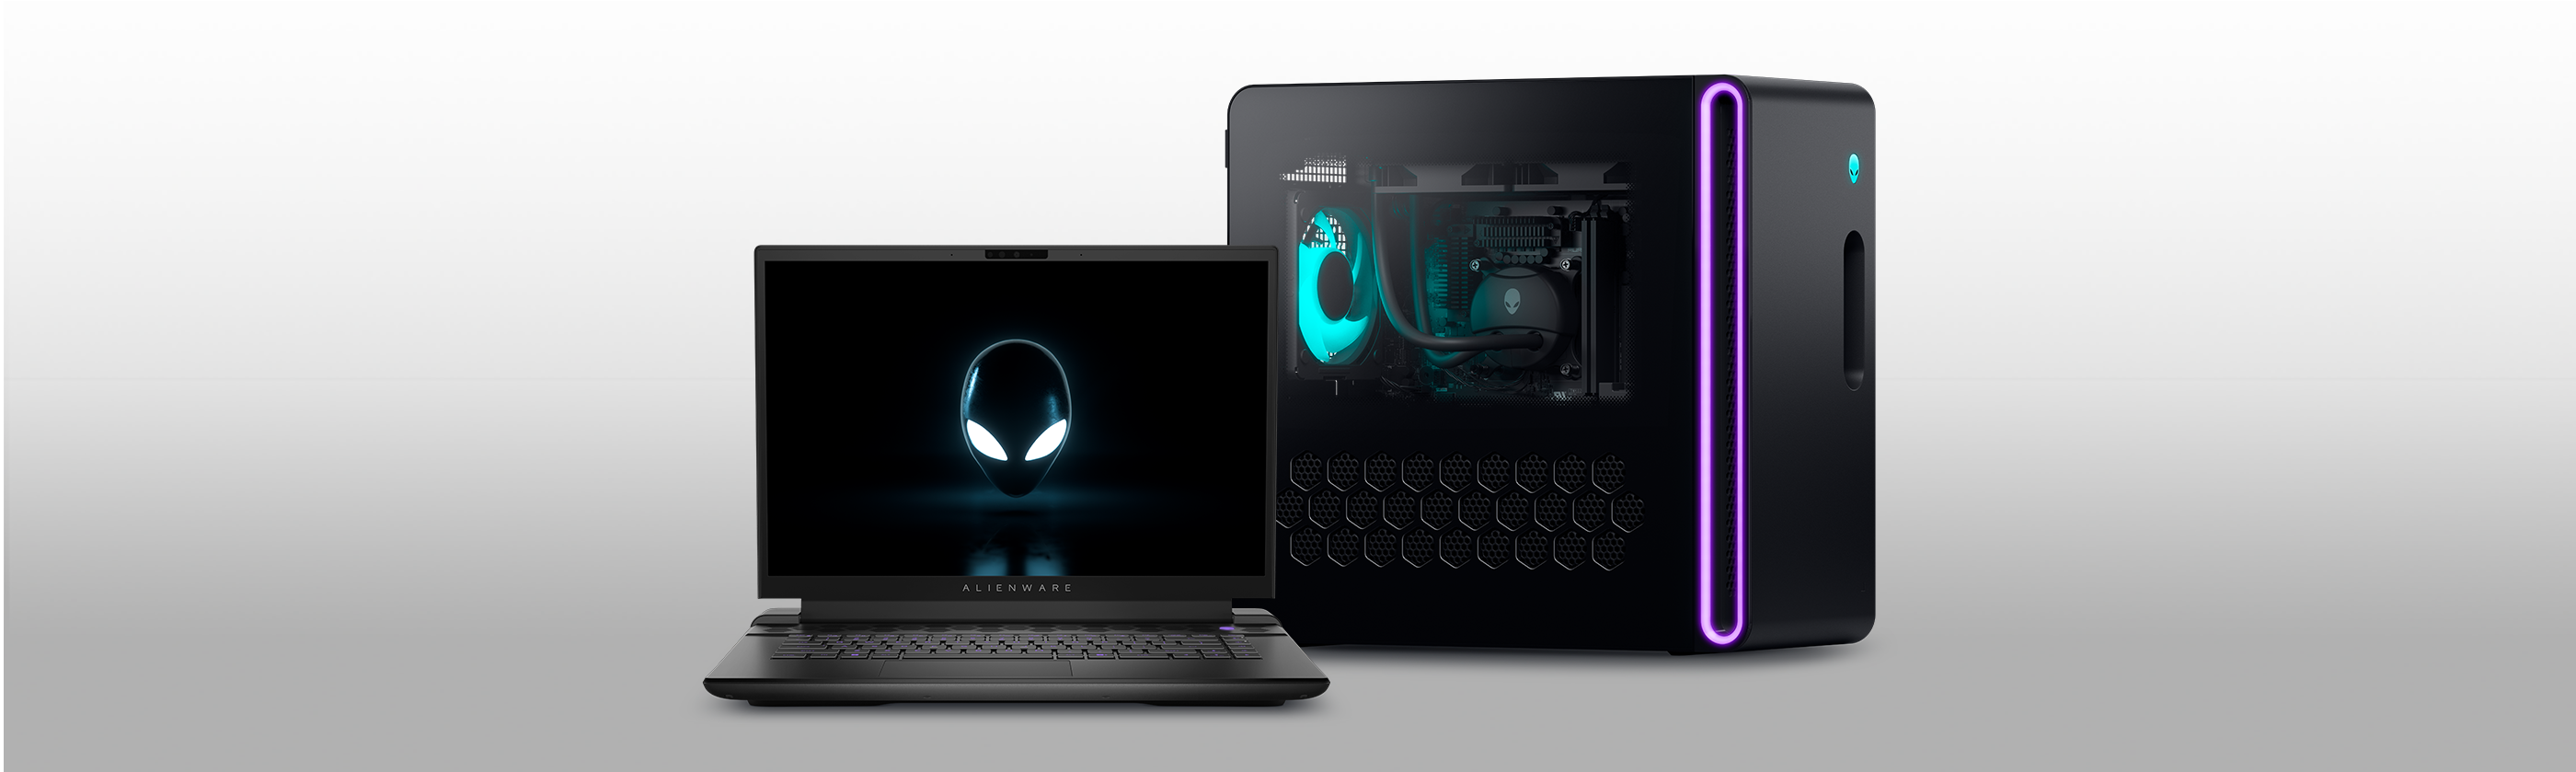 Análise do Alan Wake 2: Benchmarks de laptop e desktop 